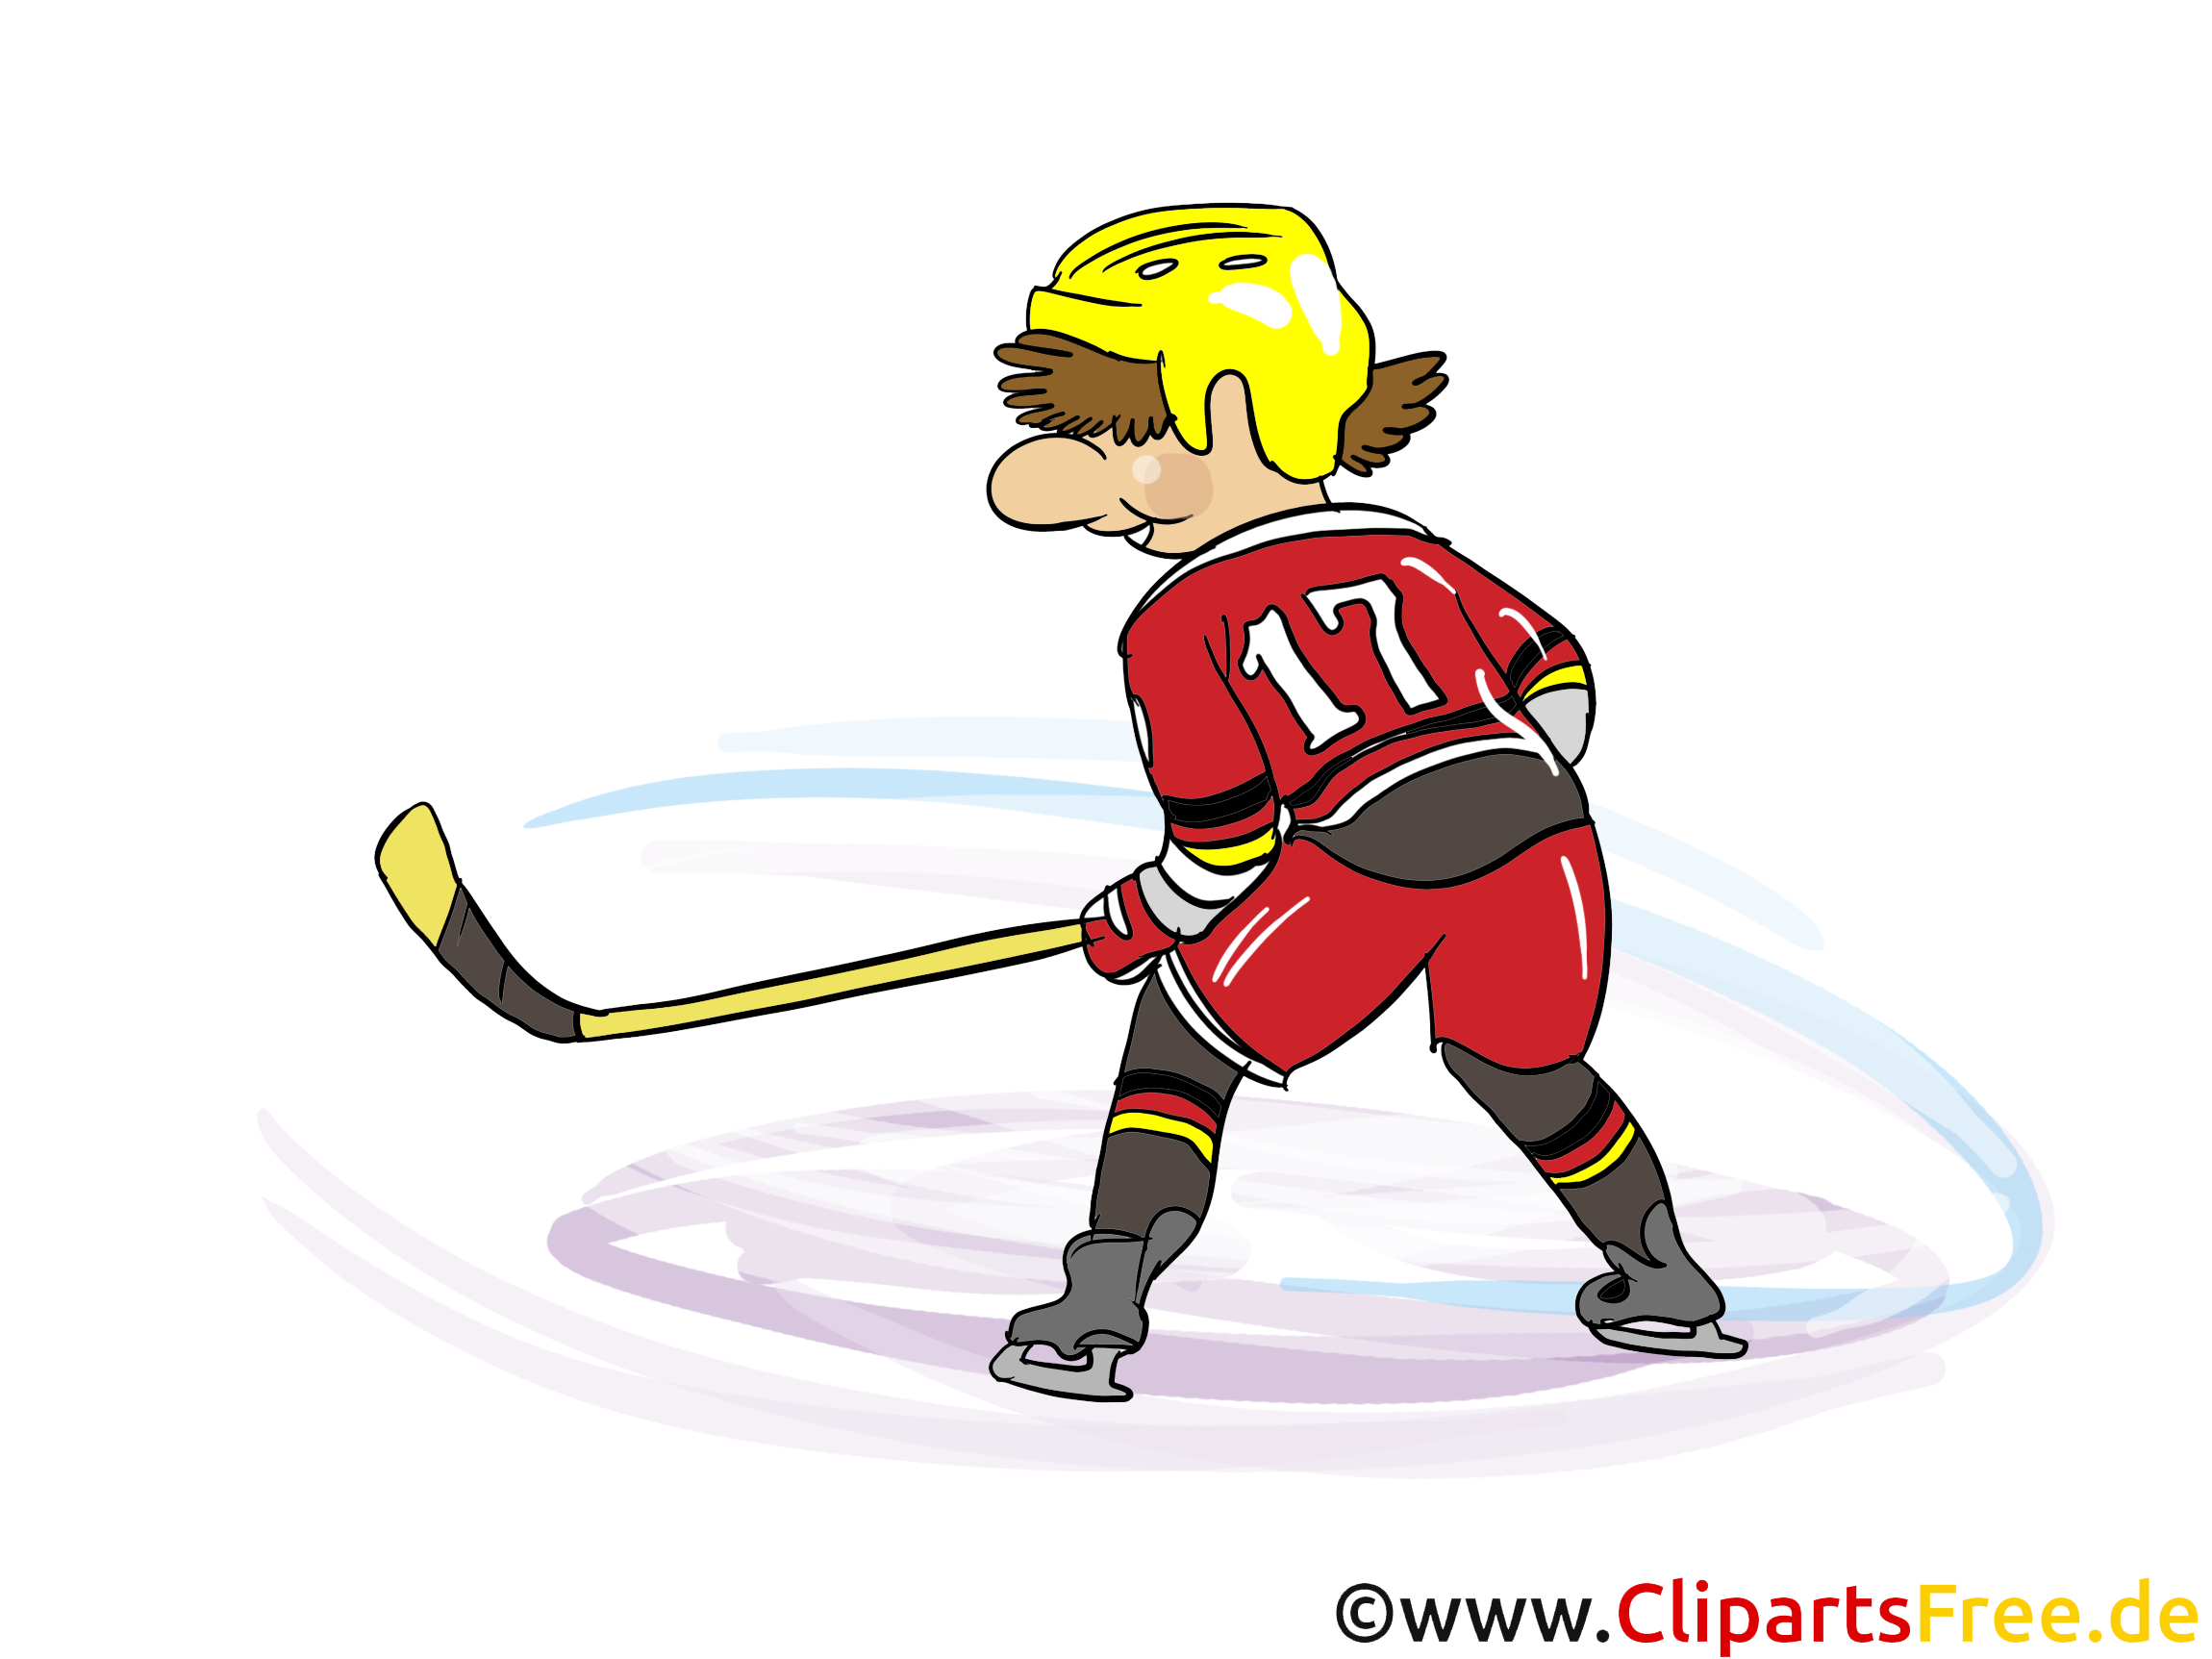 Hockey illustration à télécharger gratuite